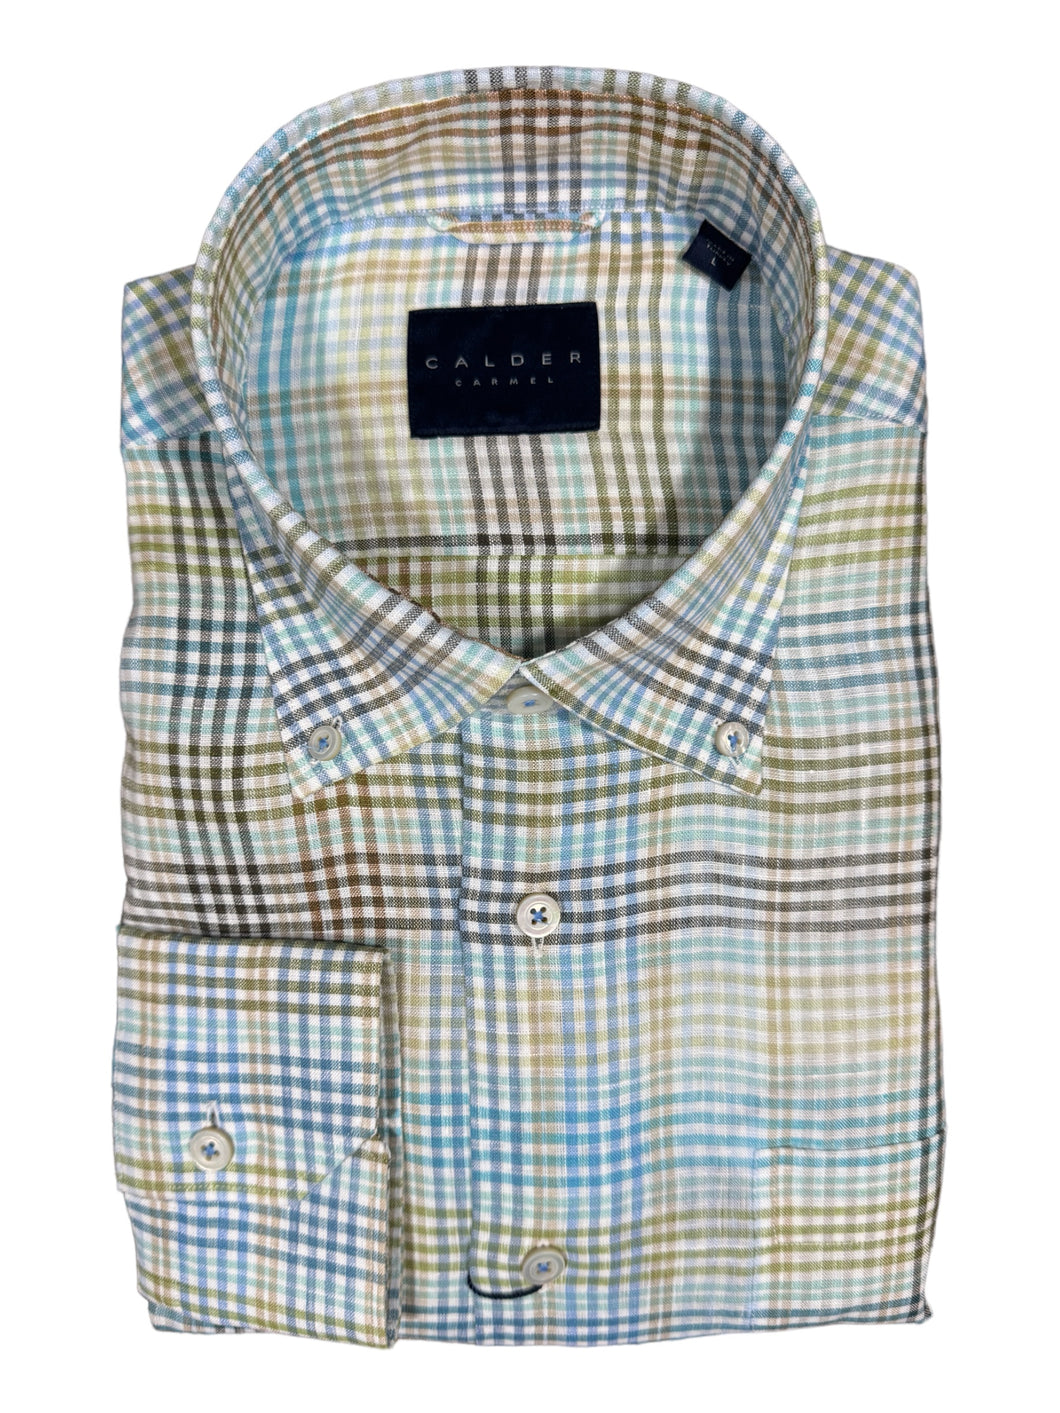 Calder Shirt Plain Weave Linen Plaid in Sage